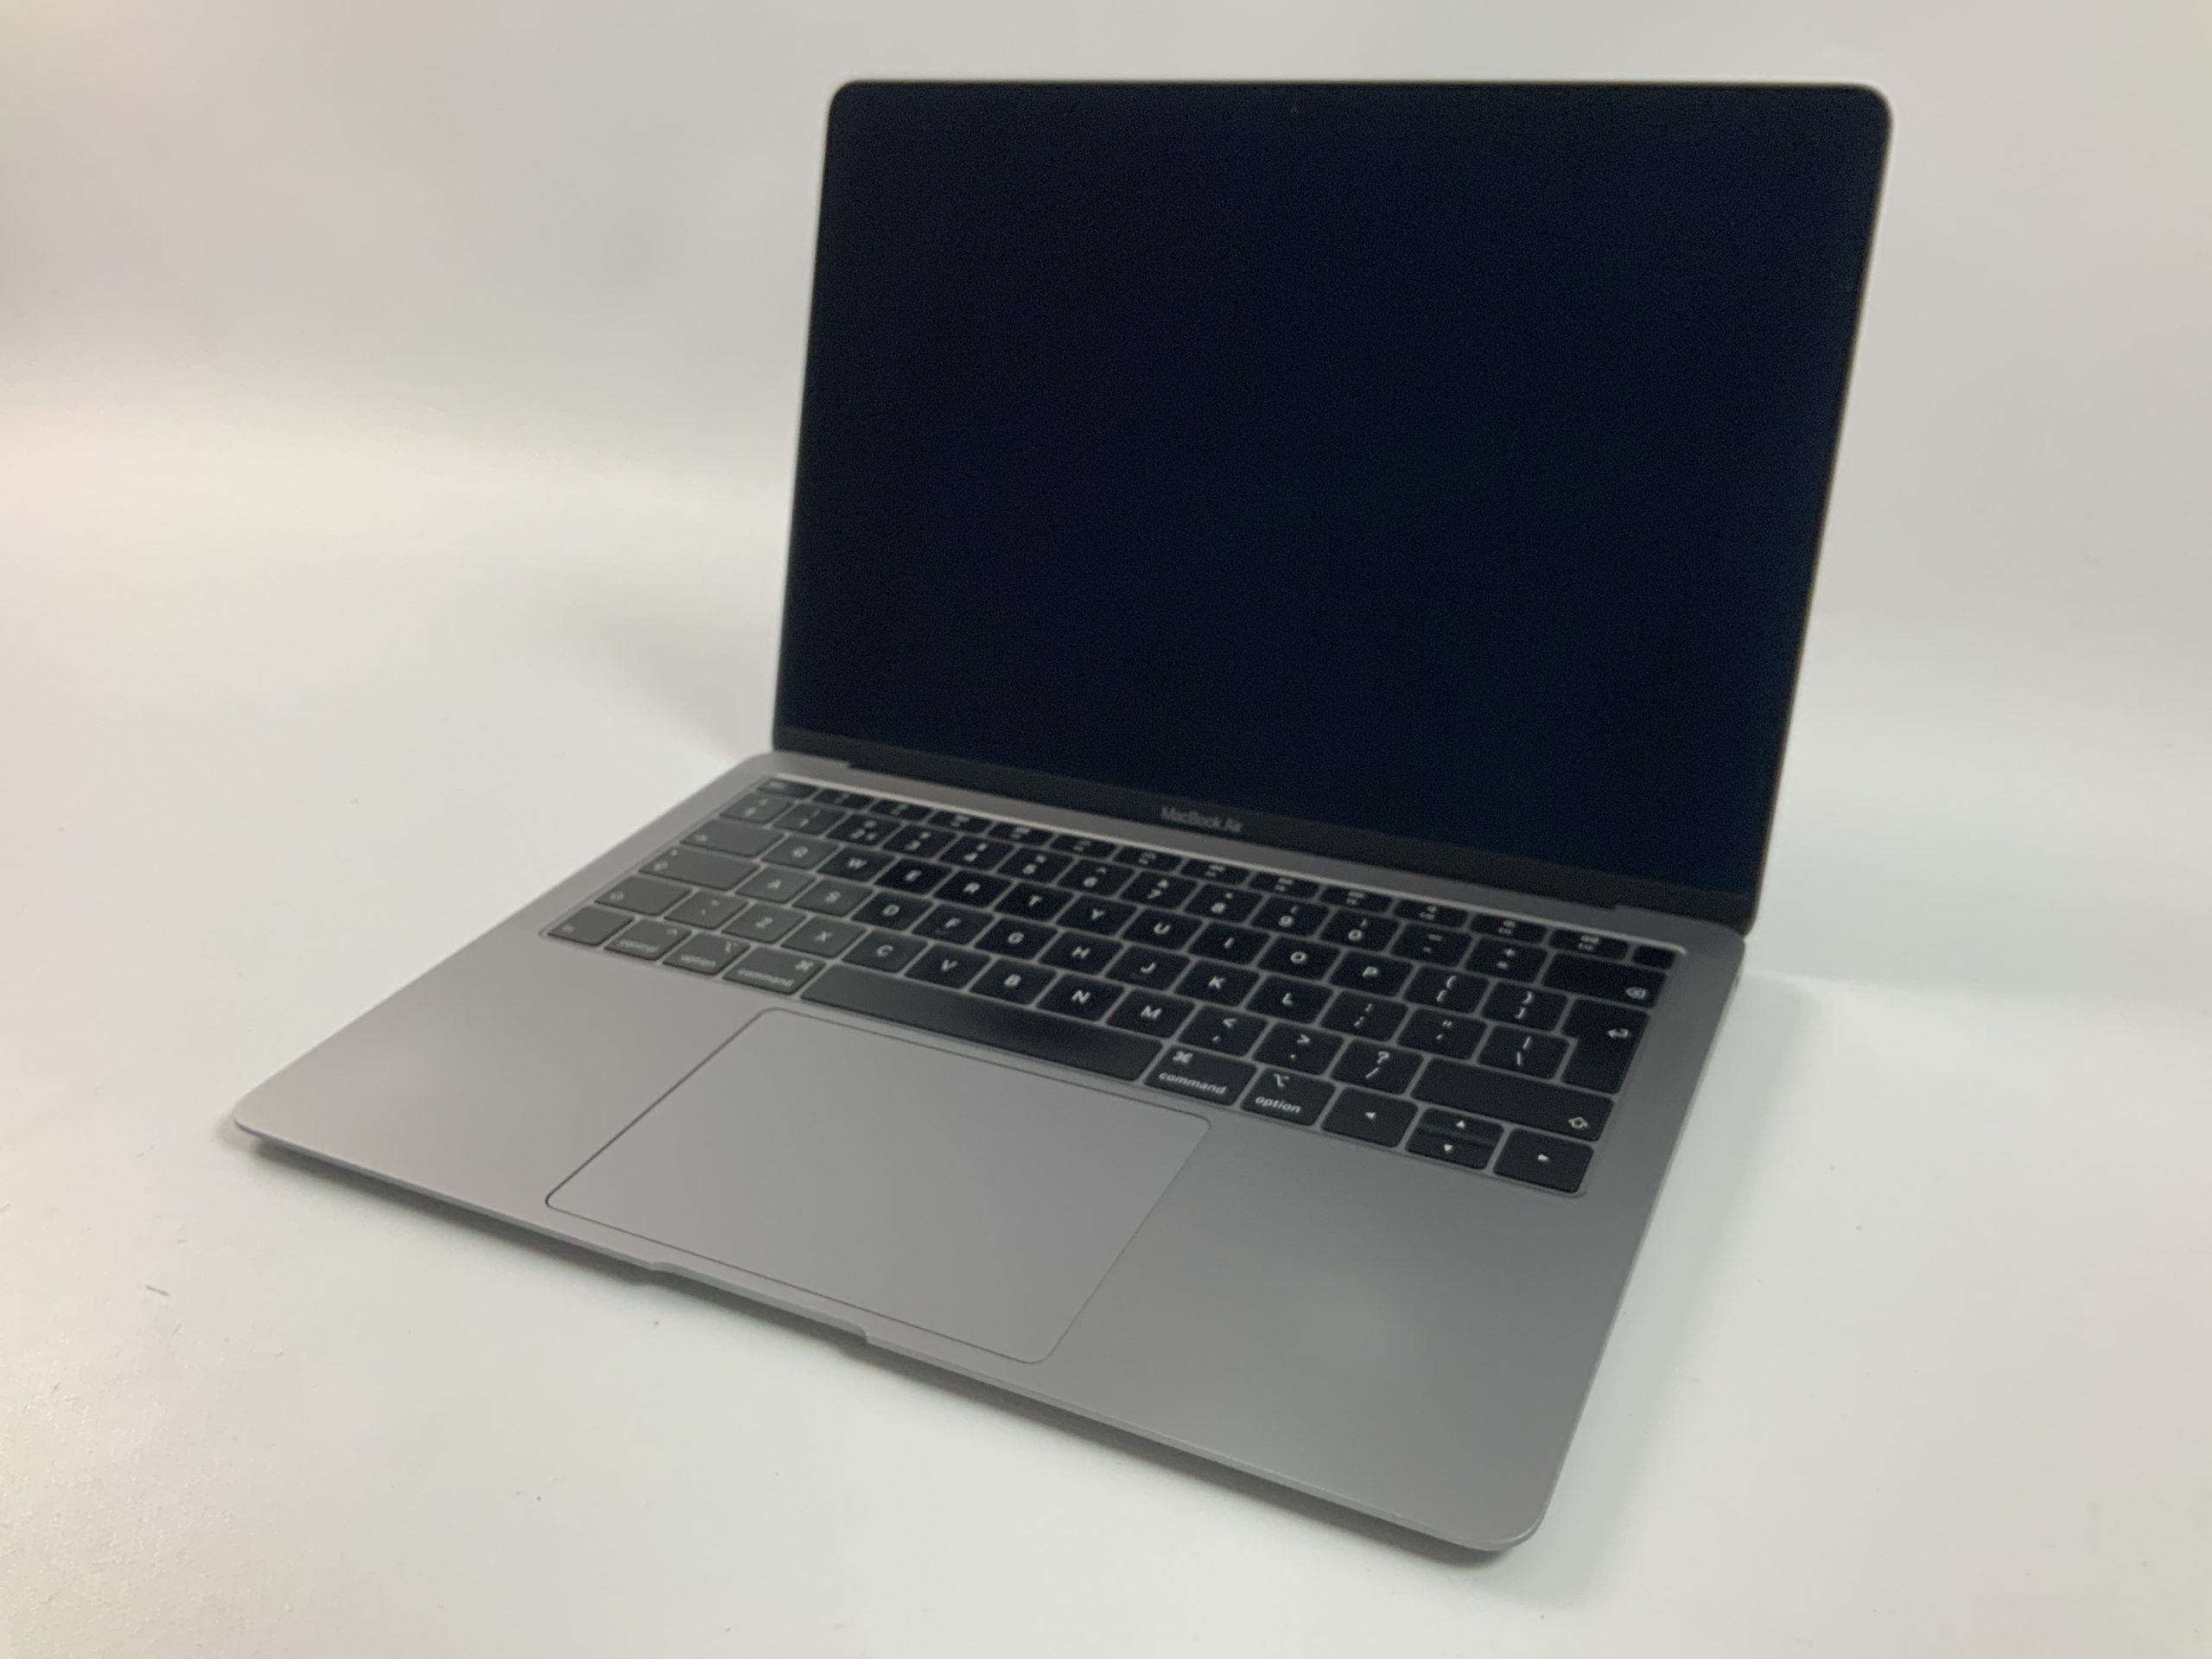 MacBook Air 13" Mid 2019 (Intel Core i5 1.6 GHz 16 GB RAM 128 GB SSD), Space Gray, Intel Core i5 1.6 GHz, 16 GB RAM, 128 GB SSD, imagen 1